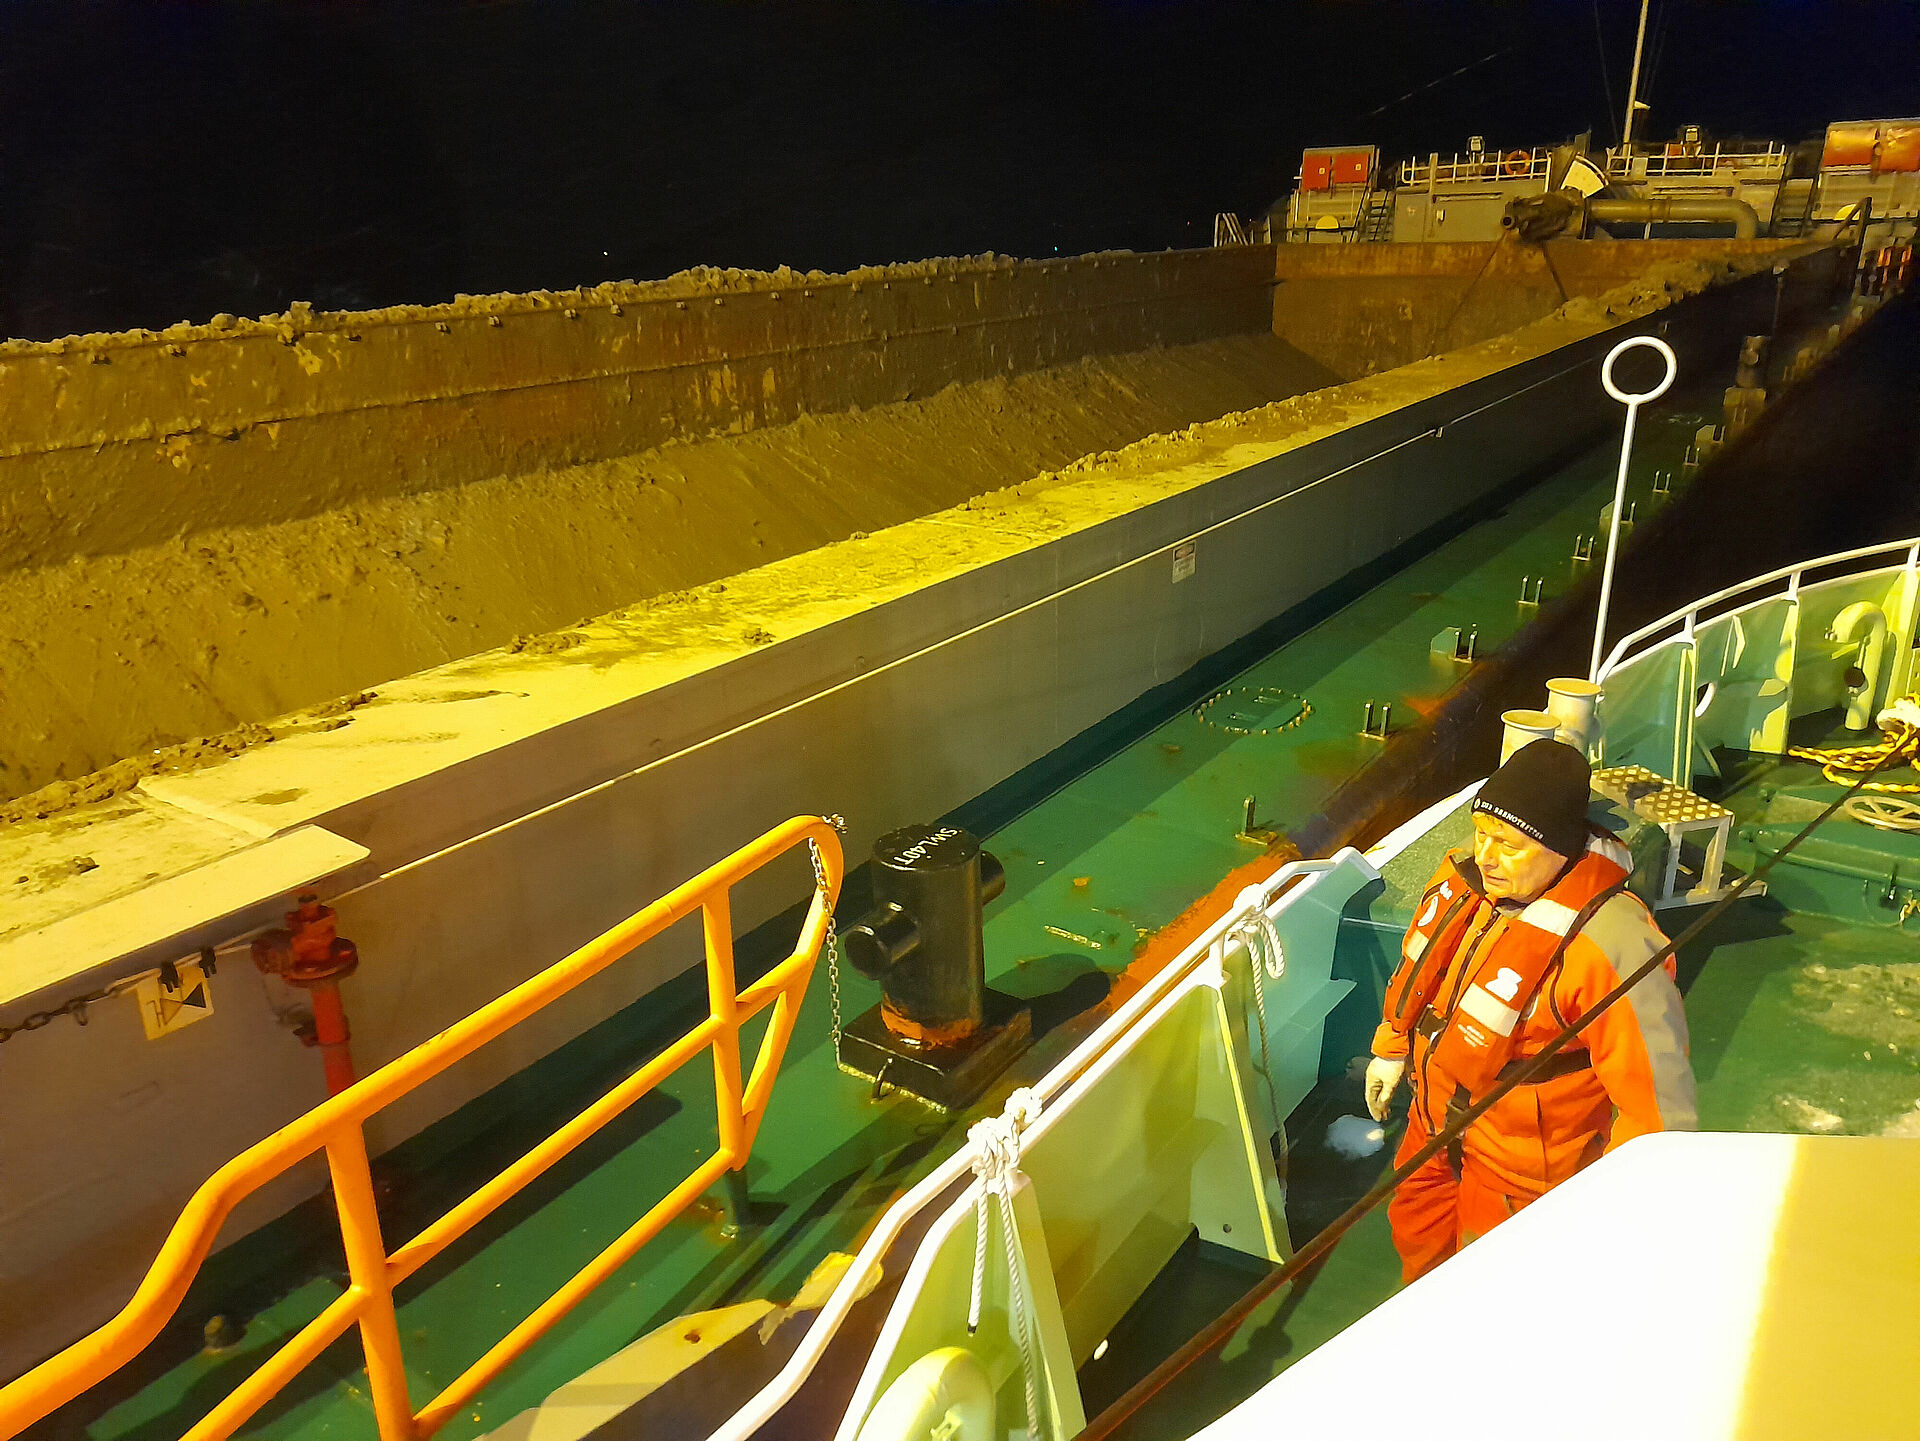 Über Bord gestürzter Seemann von Baggerschiff-Besatzung gerettet - Seenotretter übernehmen medizinische Erstversorgung